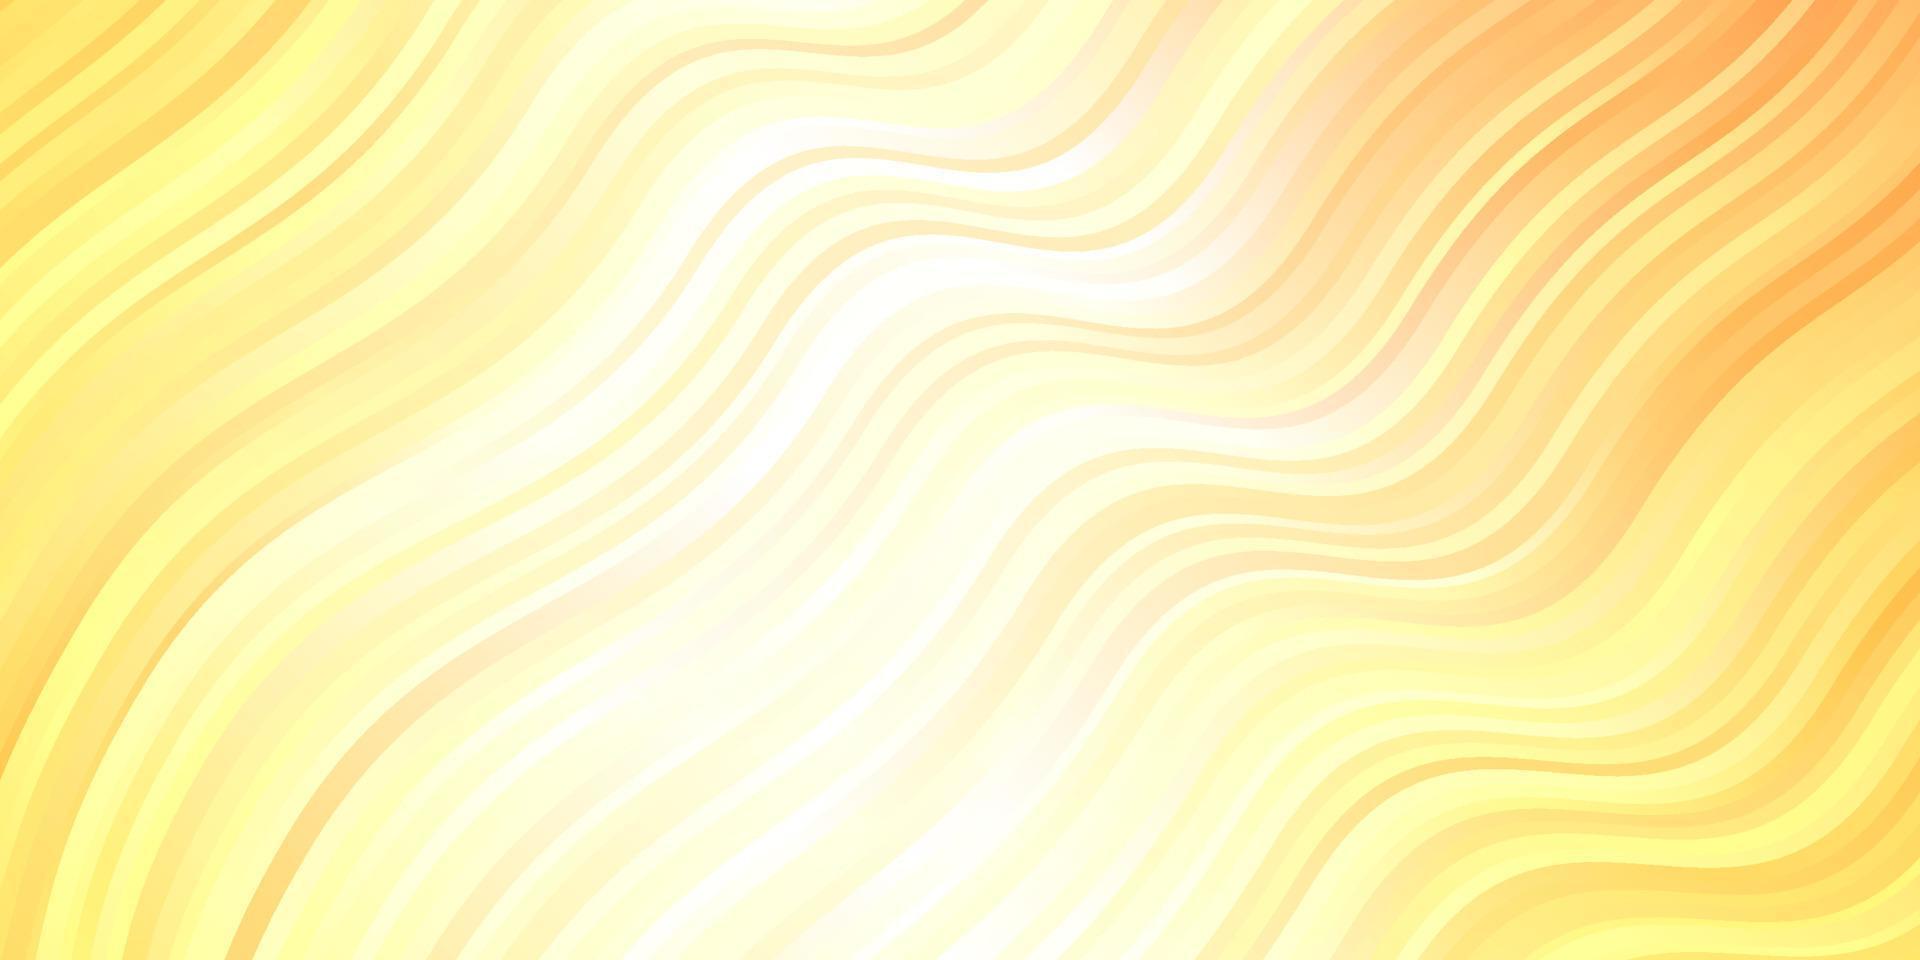 sfondo vettoriale arancione chiaro con arco circolare.